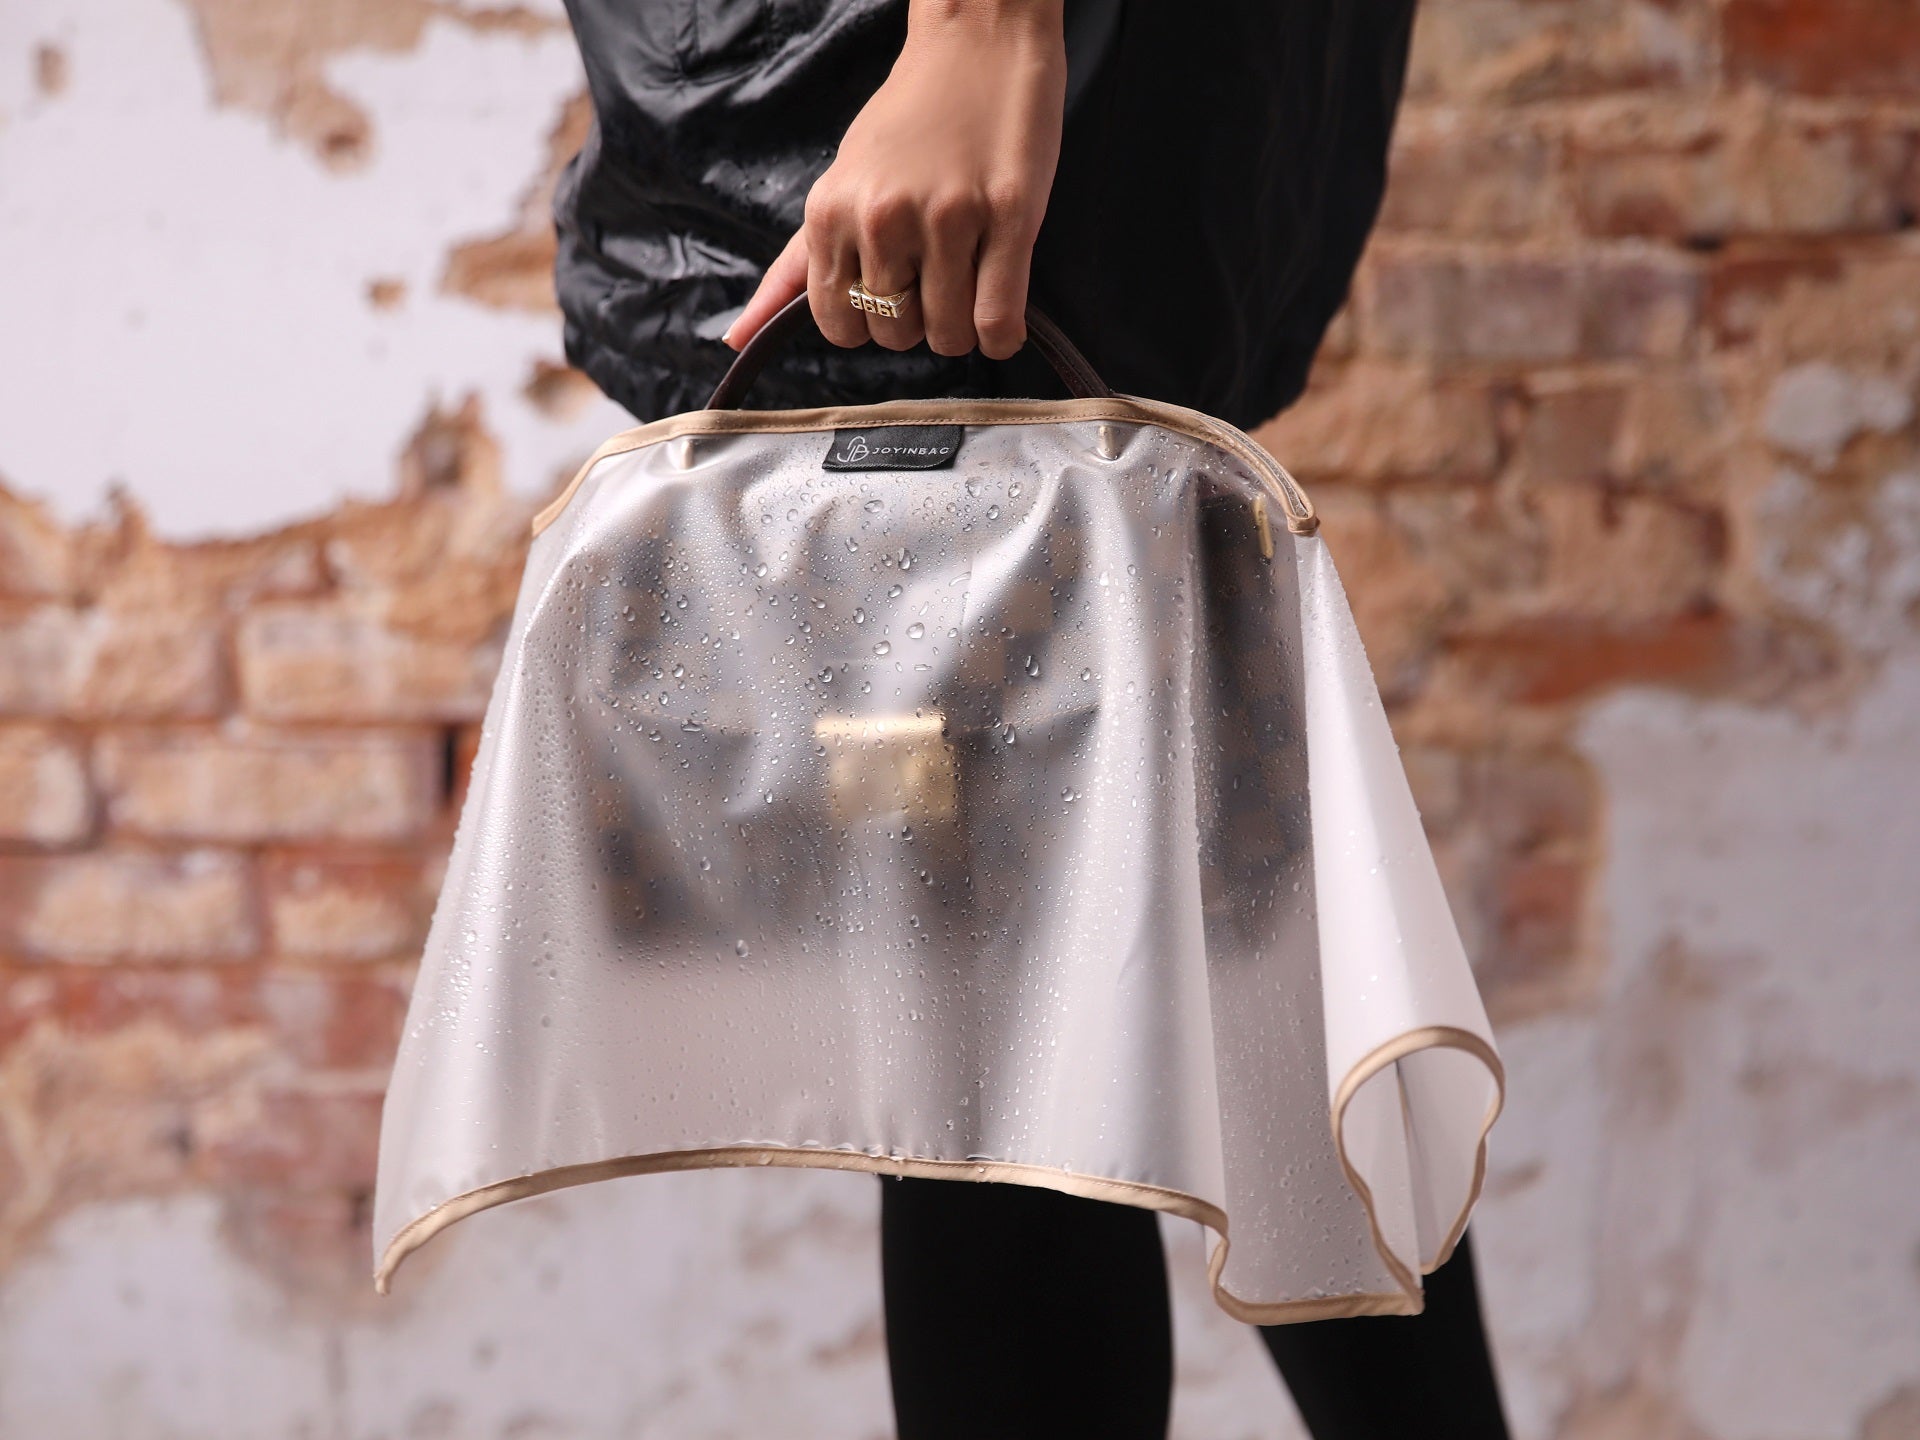 Designer Handbag Rain Protector, Handbag Rain Slicker